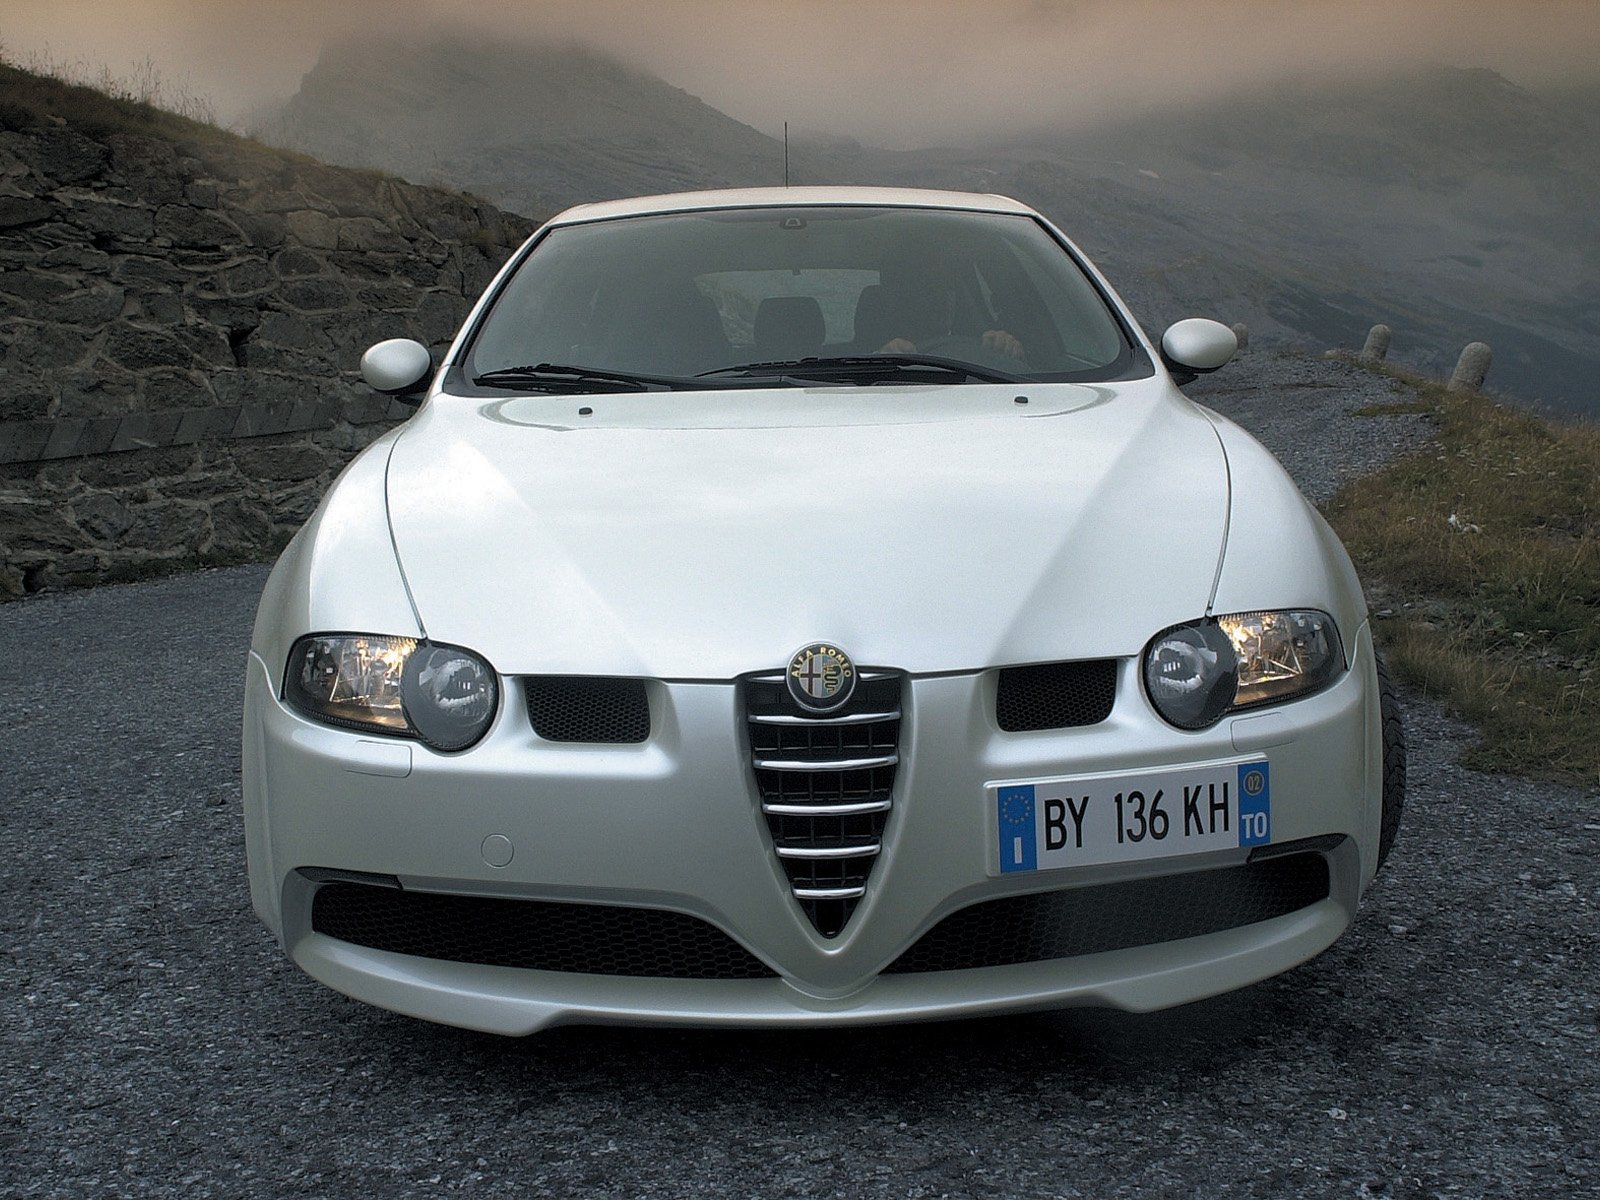 Alfa Romeo 147 GTA. View Download Wallpaper. 1600x1200. Comments